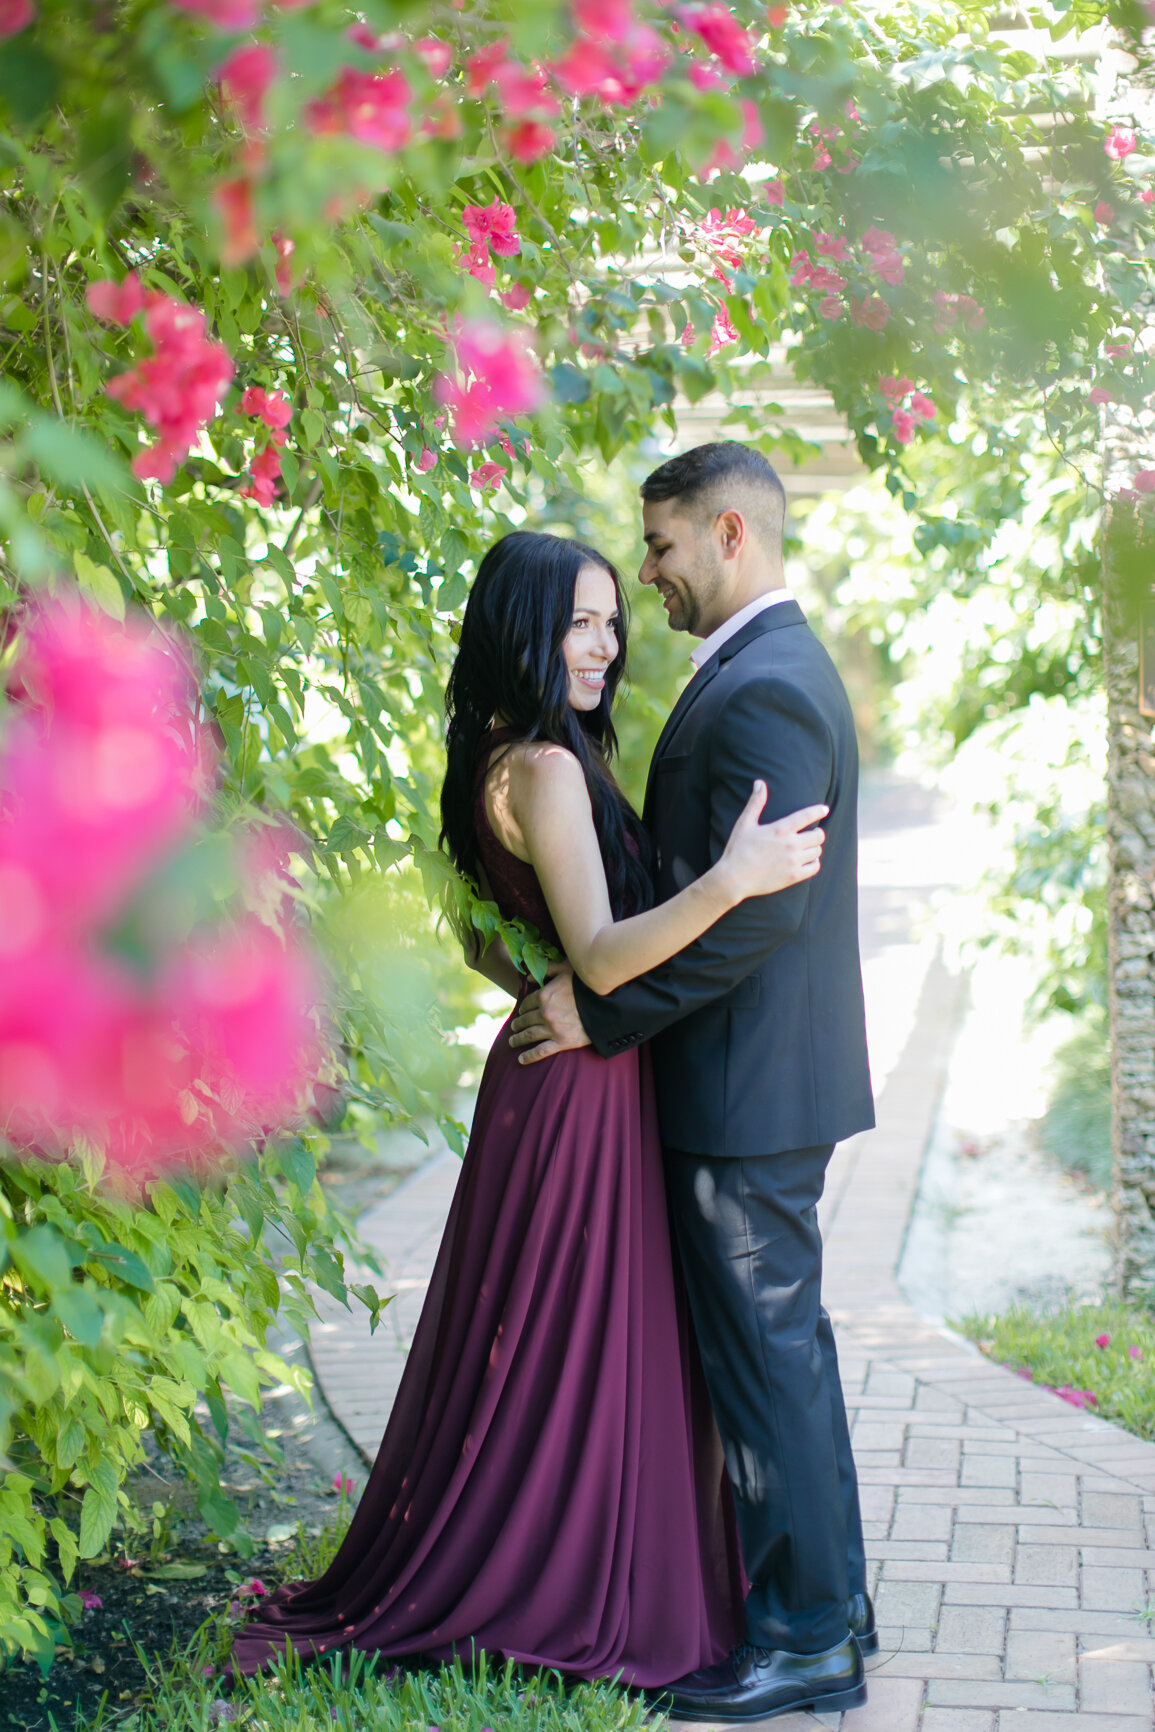 Fairchild Tropical Botanic Garden Engagement Photos | Miami Wedding Photographer Dipp Photography